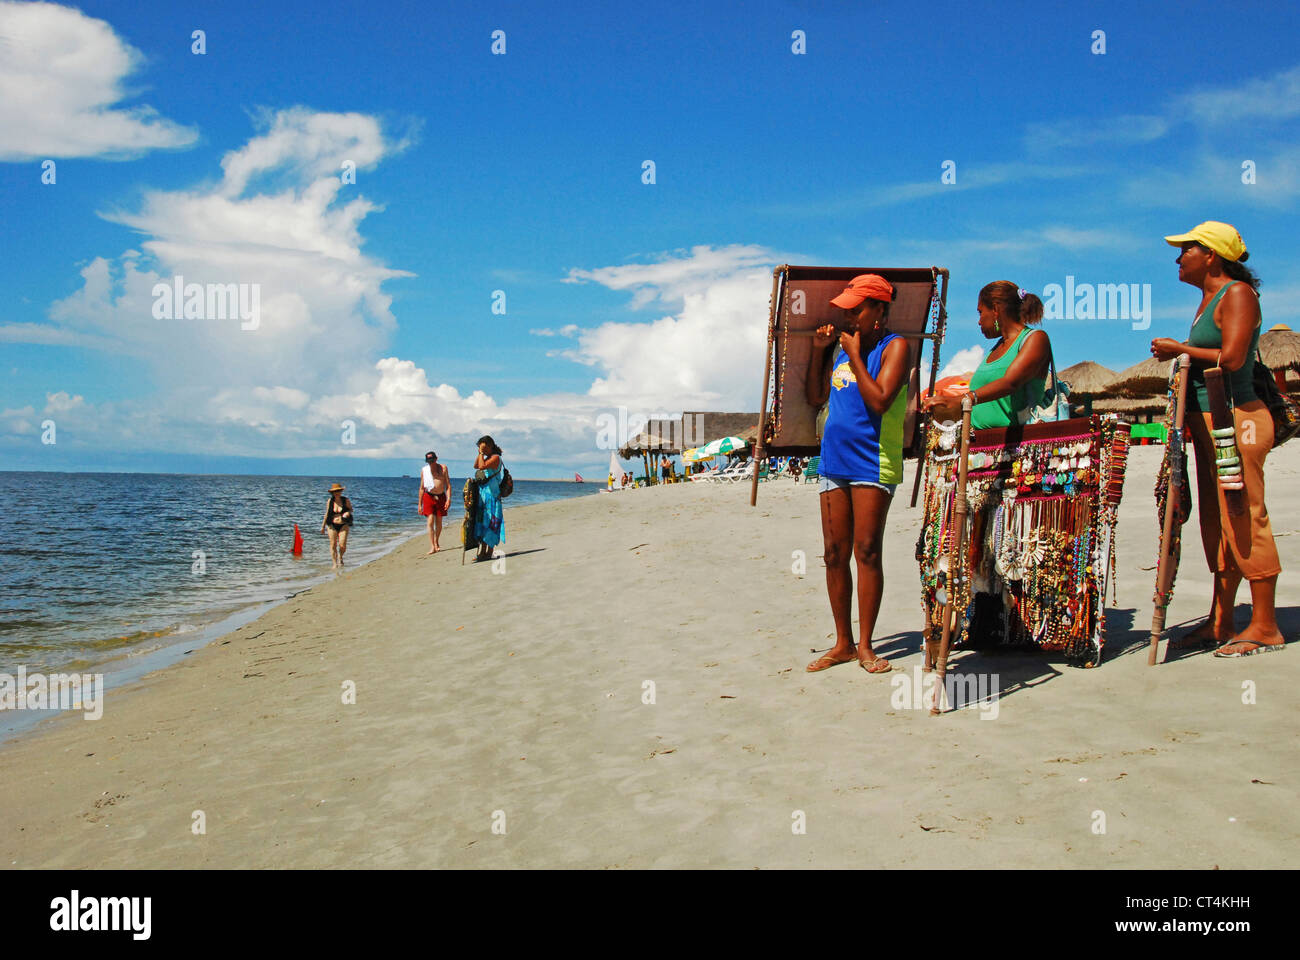 Il Brasile, Pernambuco, Ilha de Itamaraca, Corrao de Aviao le persone che vendono artigianato sulla spiaggia Foto Stock